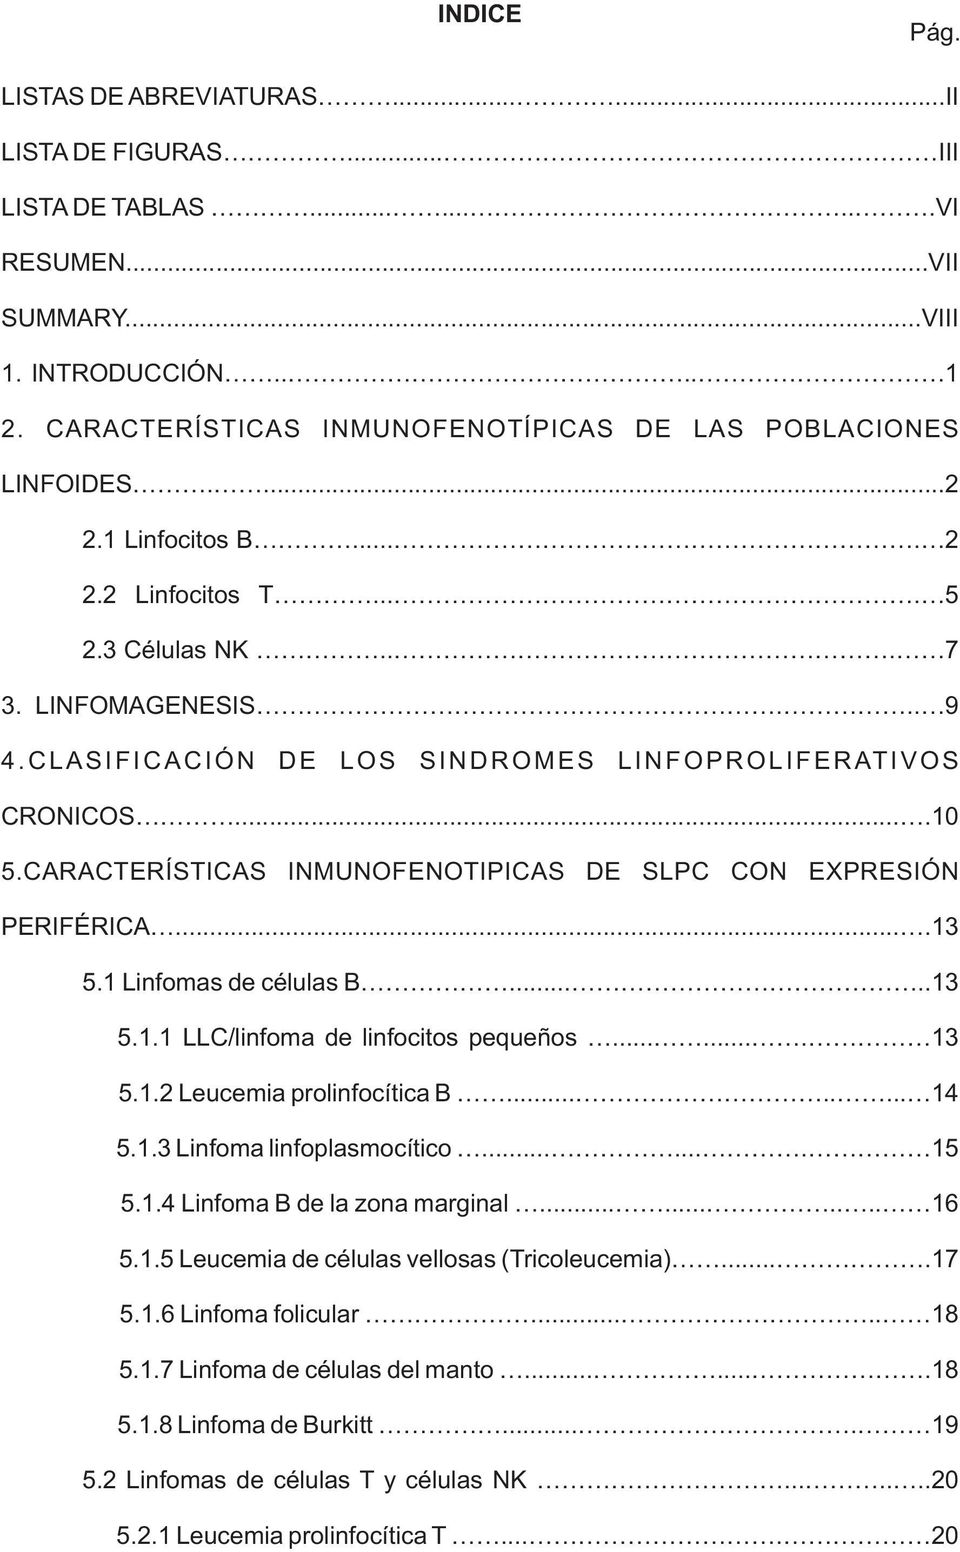 CLASIFICACIÓN DE LOS SINDROMES LINFOPROLIFERATIVOS CRONICOS....10 5.CARACTERÍSTICAS INMUNOFENOTIPICAS DE SLPC CON EXPRESIÓN PERIFÉRICA....13 5.1 Linfomas de células B.....13 5.1.1 LLC/linfoma de linfocitos pequeños.